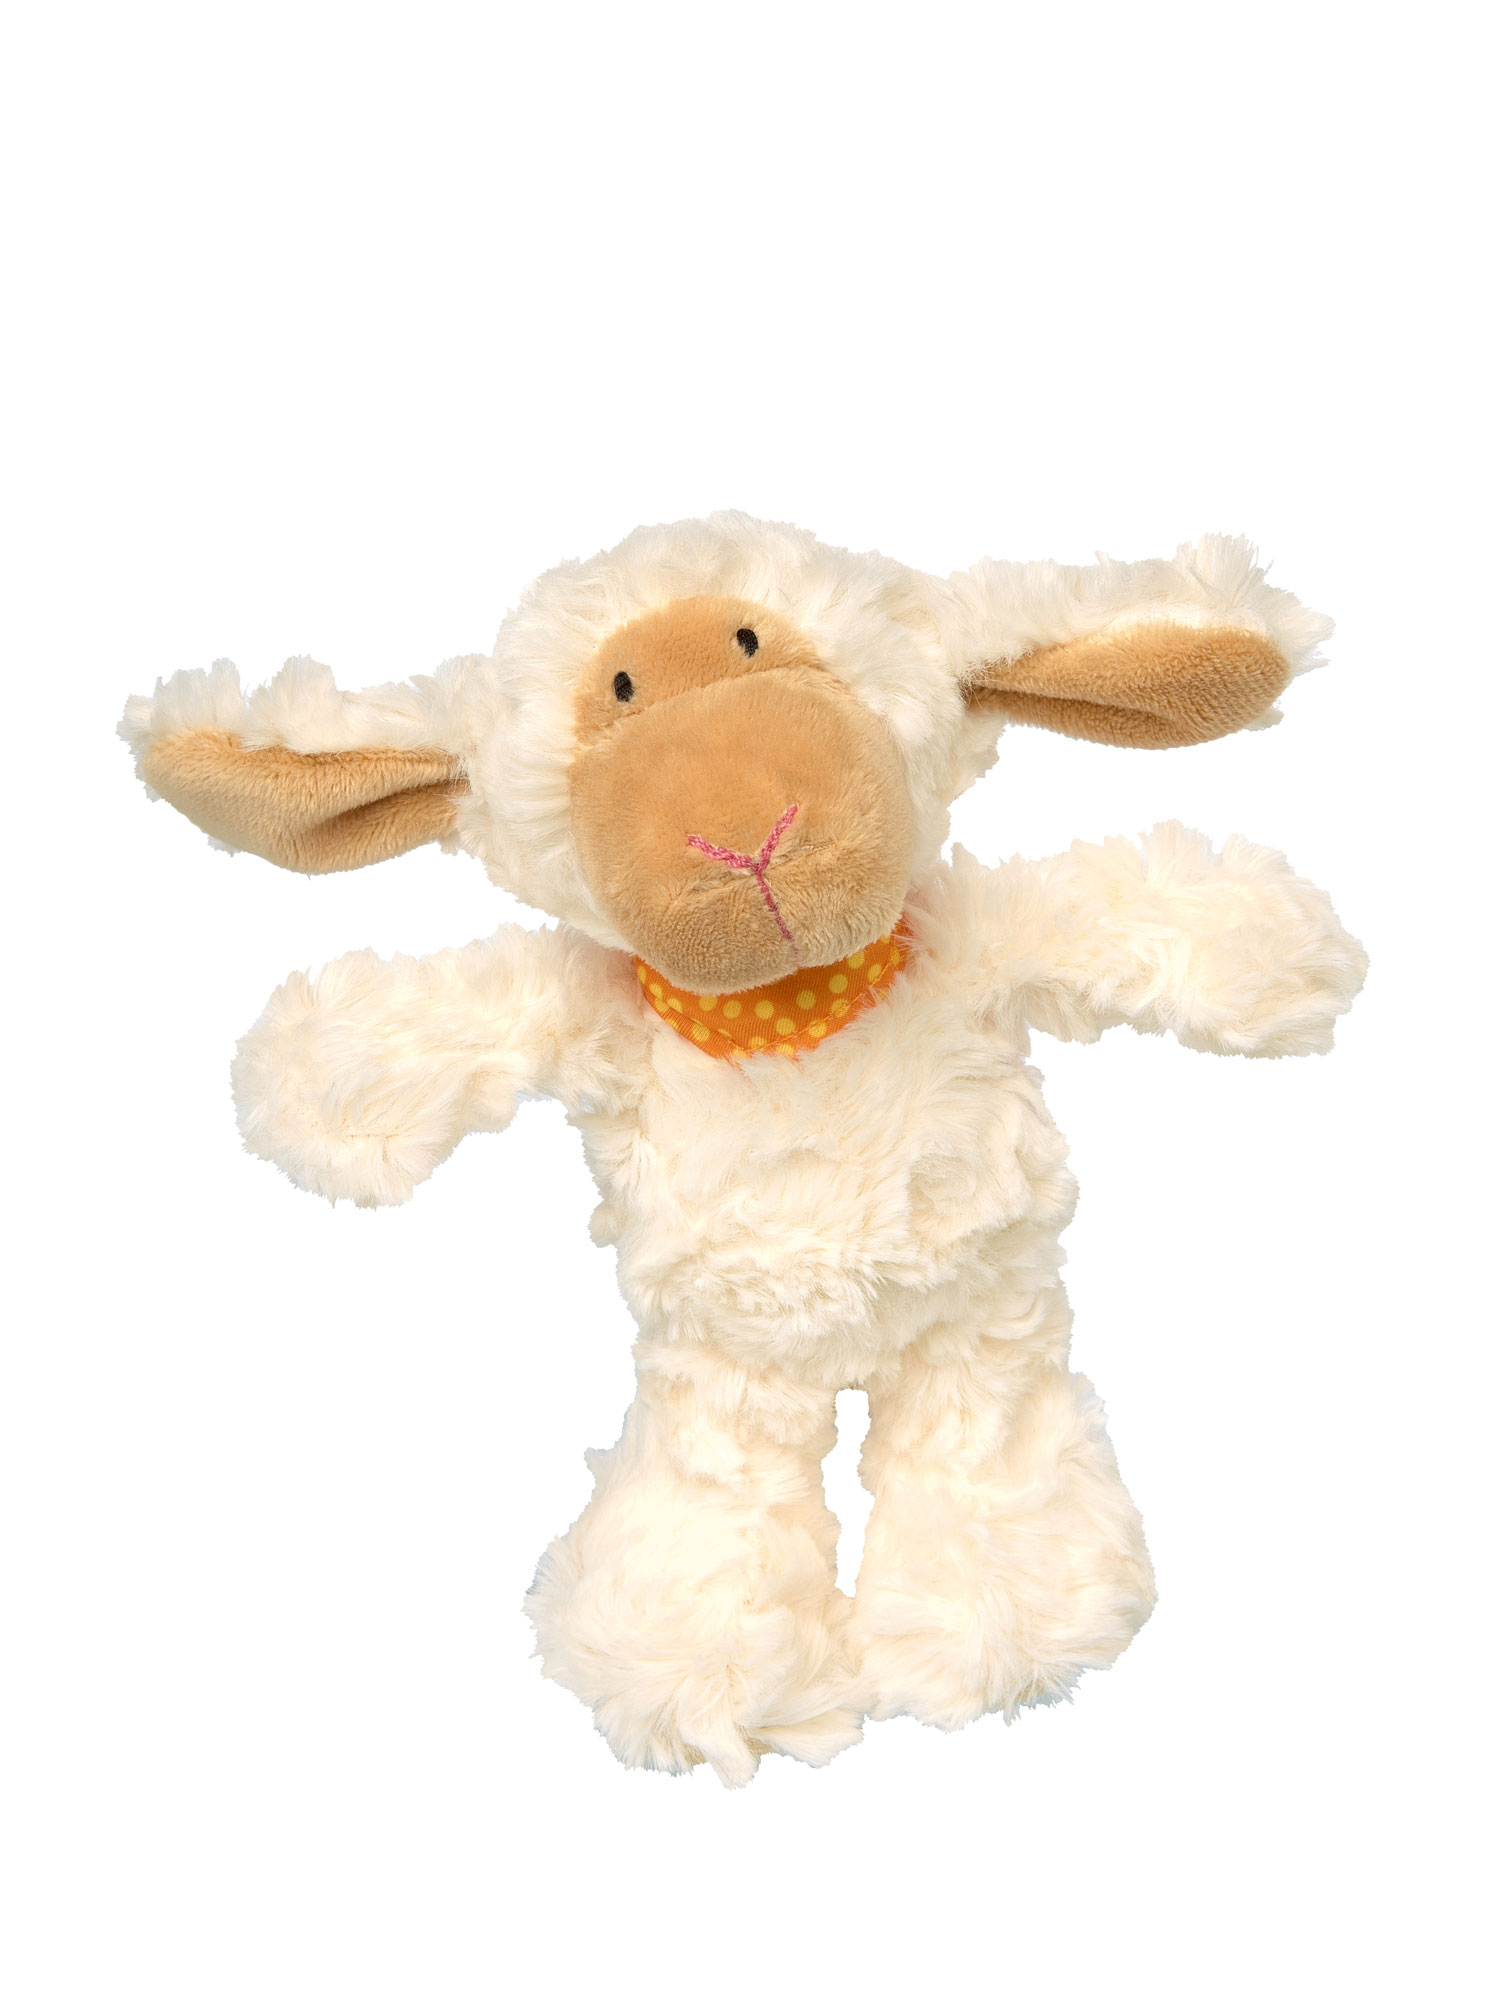 Soft toy sheep Emmala, size XS